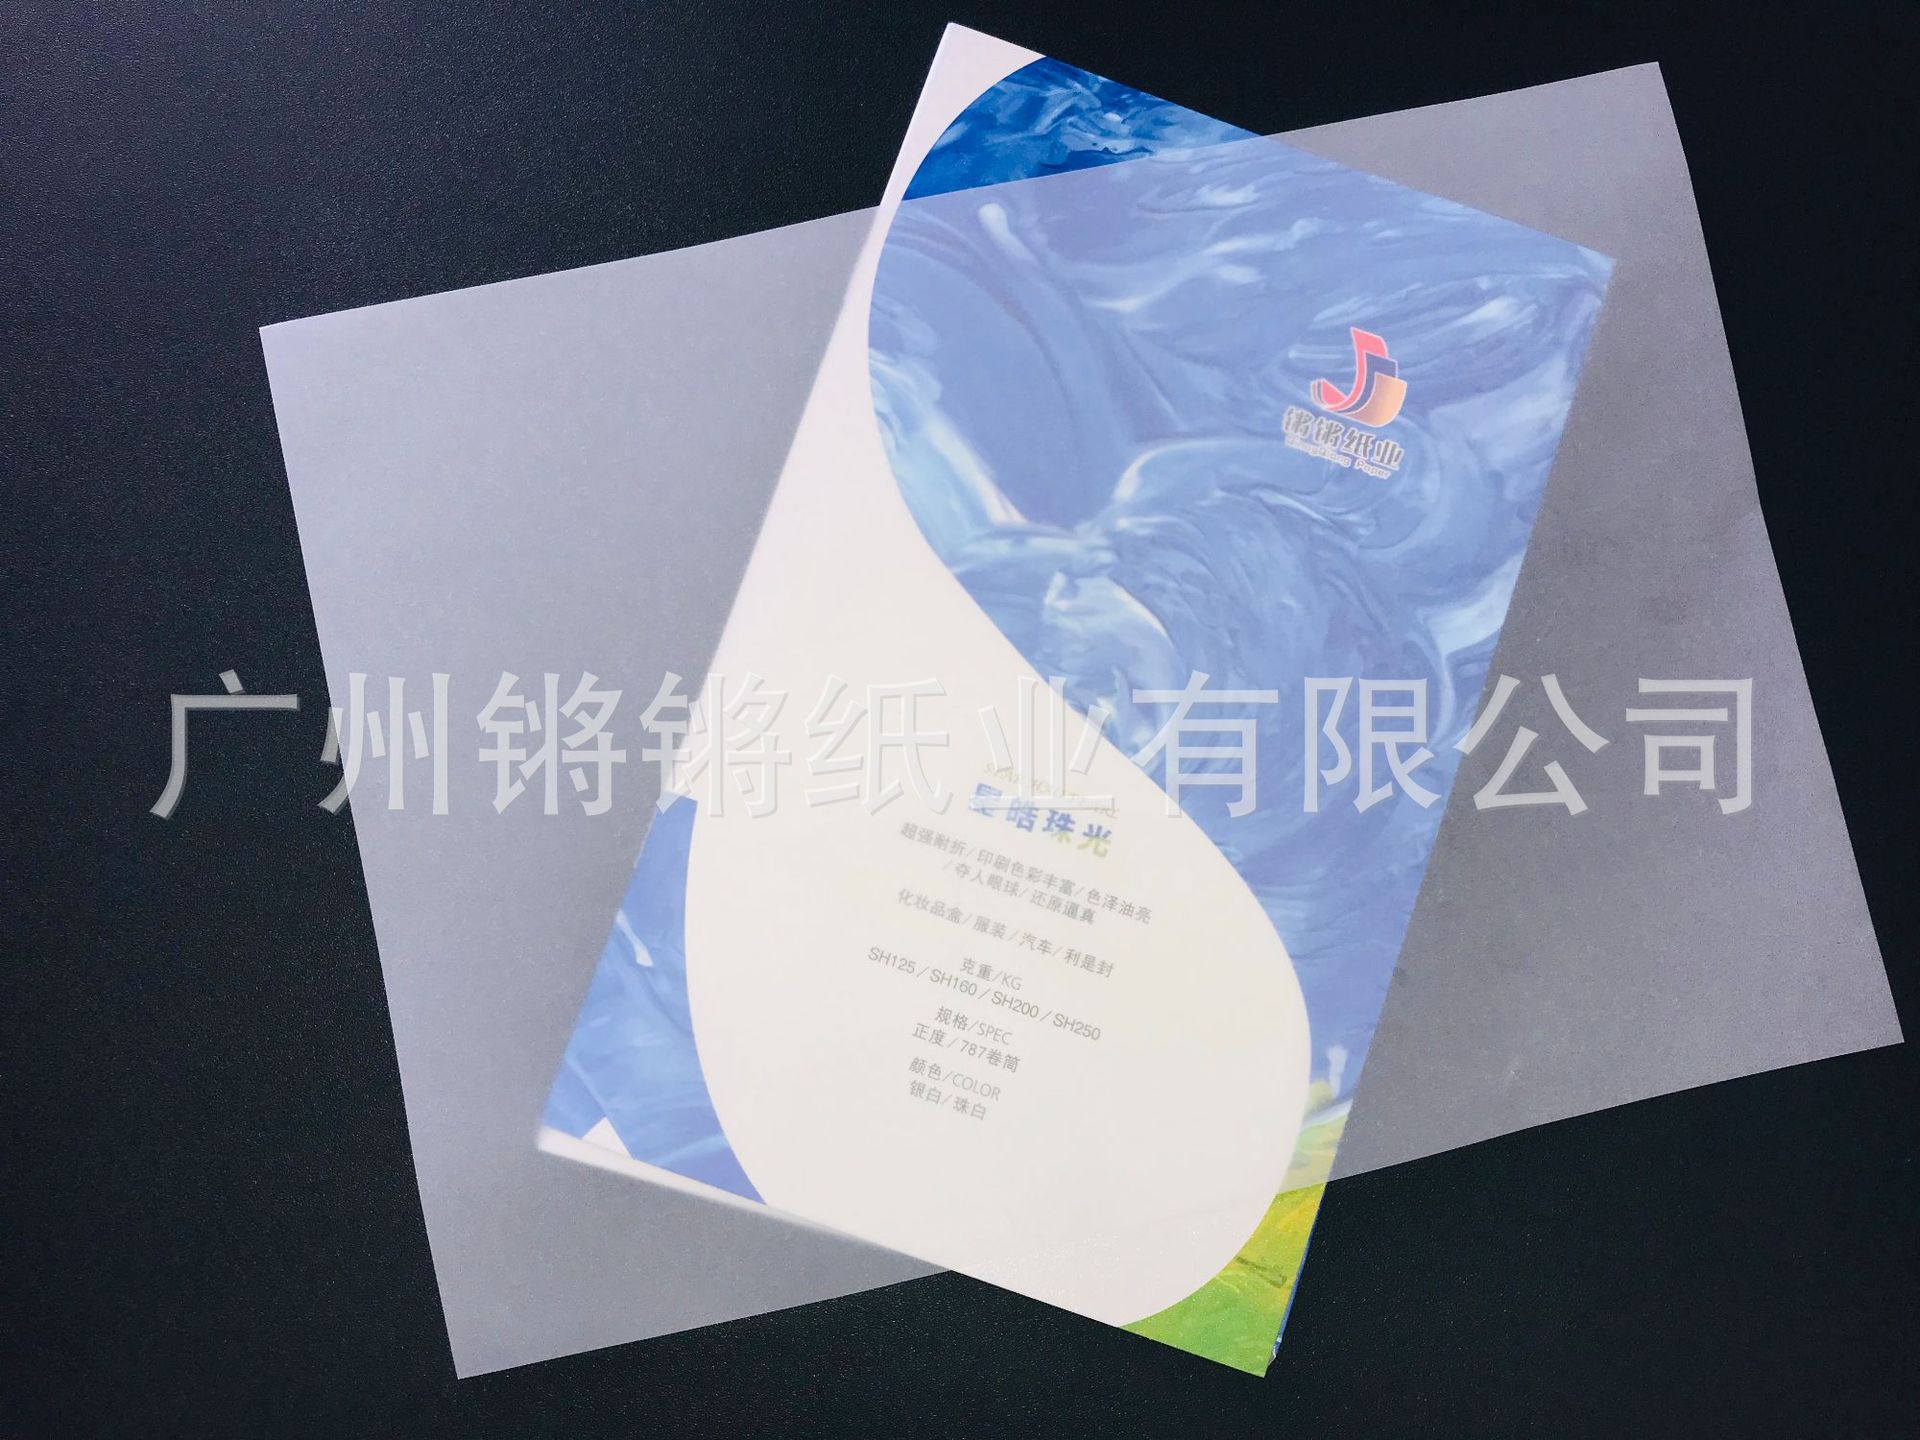 中国国际加工,包装及印刷科技展览会_印刷包装行业质量管理_青岛 包装 印刷